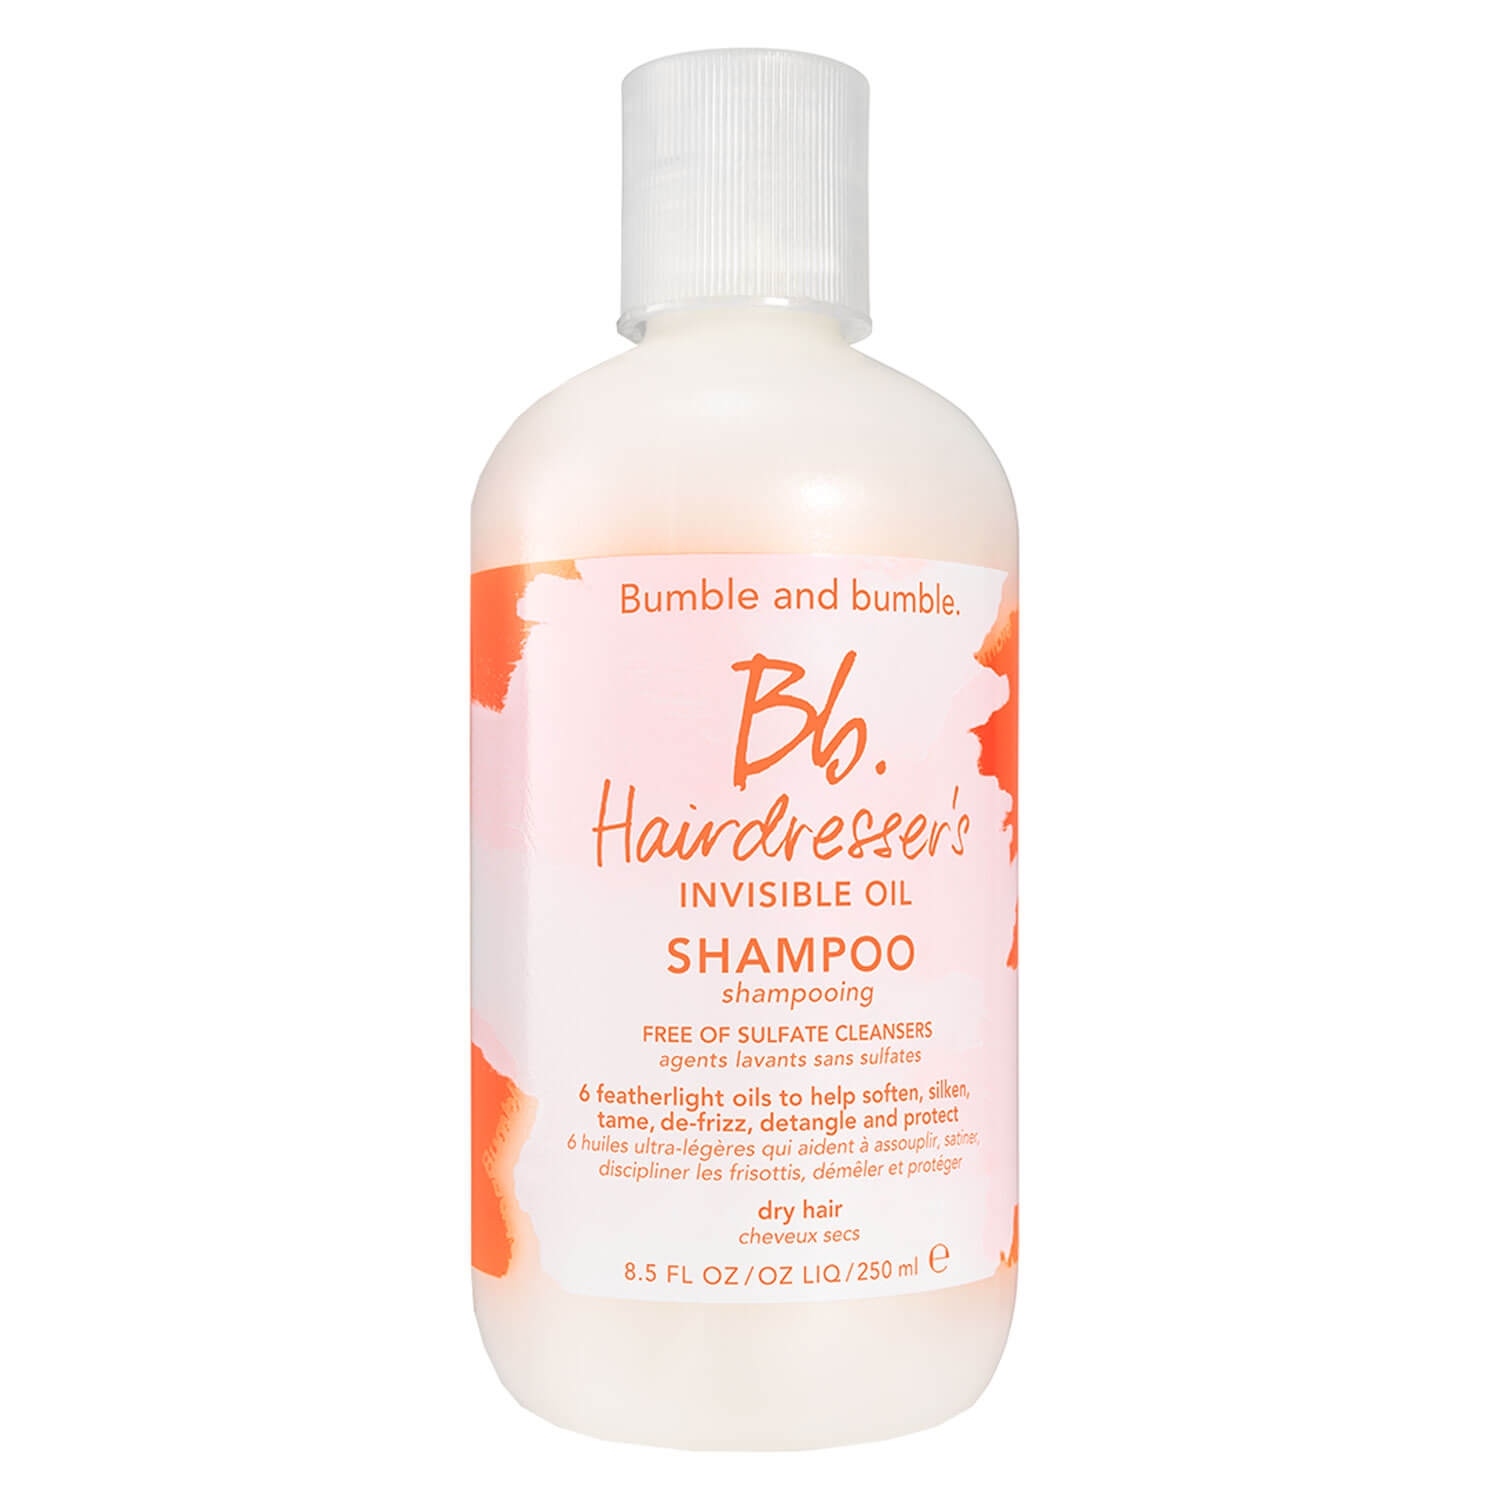 Produktbild von Bb. Hairdresser's Invisible Oil - Shampoo